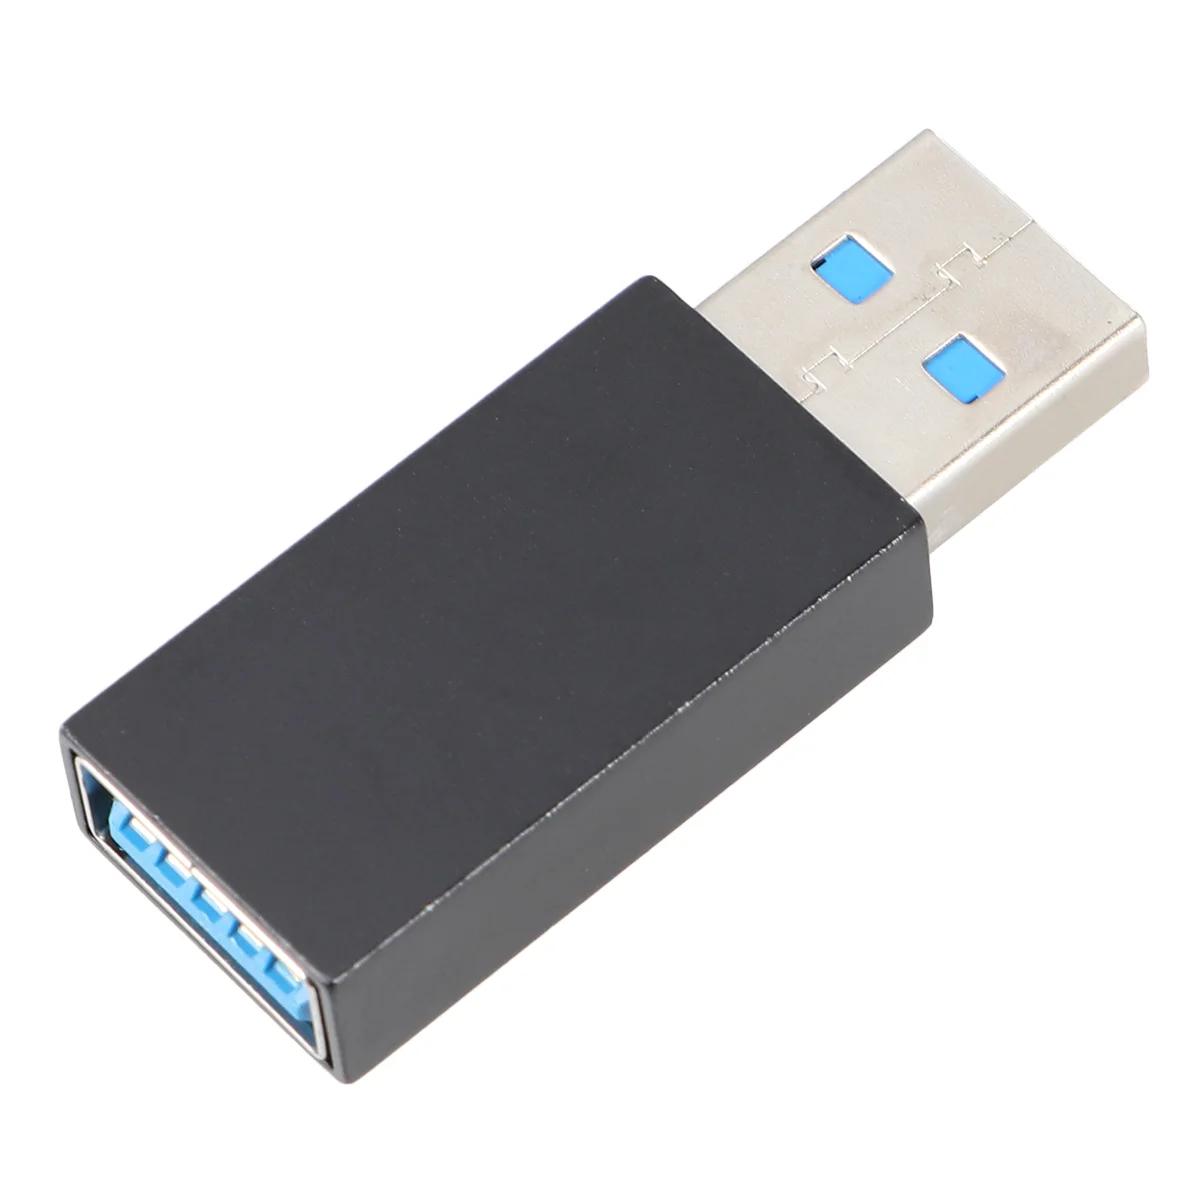  繫ǿ USB  ܱ,  ǿ  ǻ, USB  ̹ 30 ܱ,    Ű